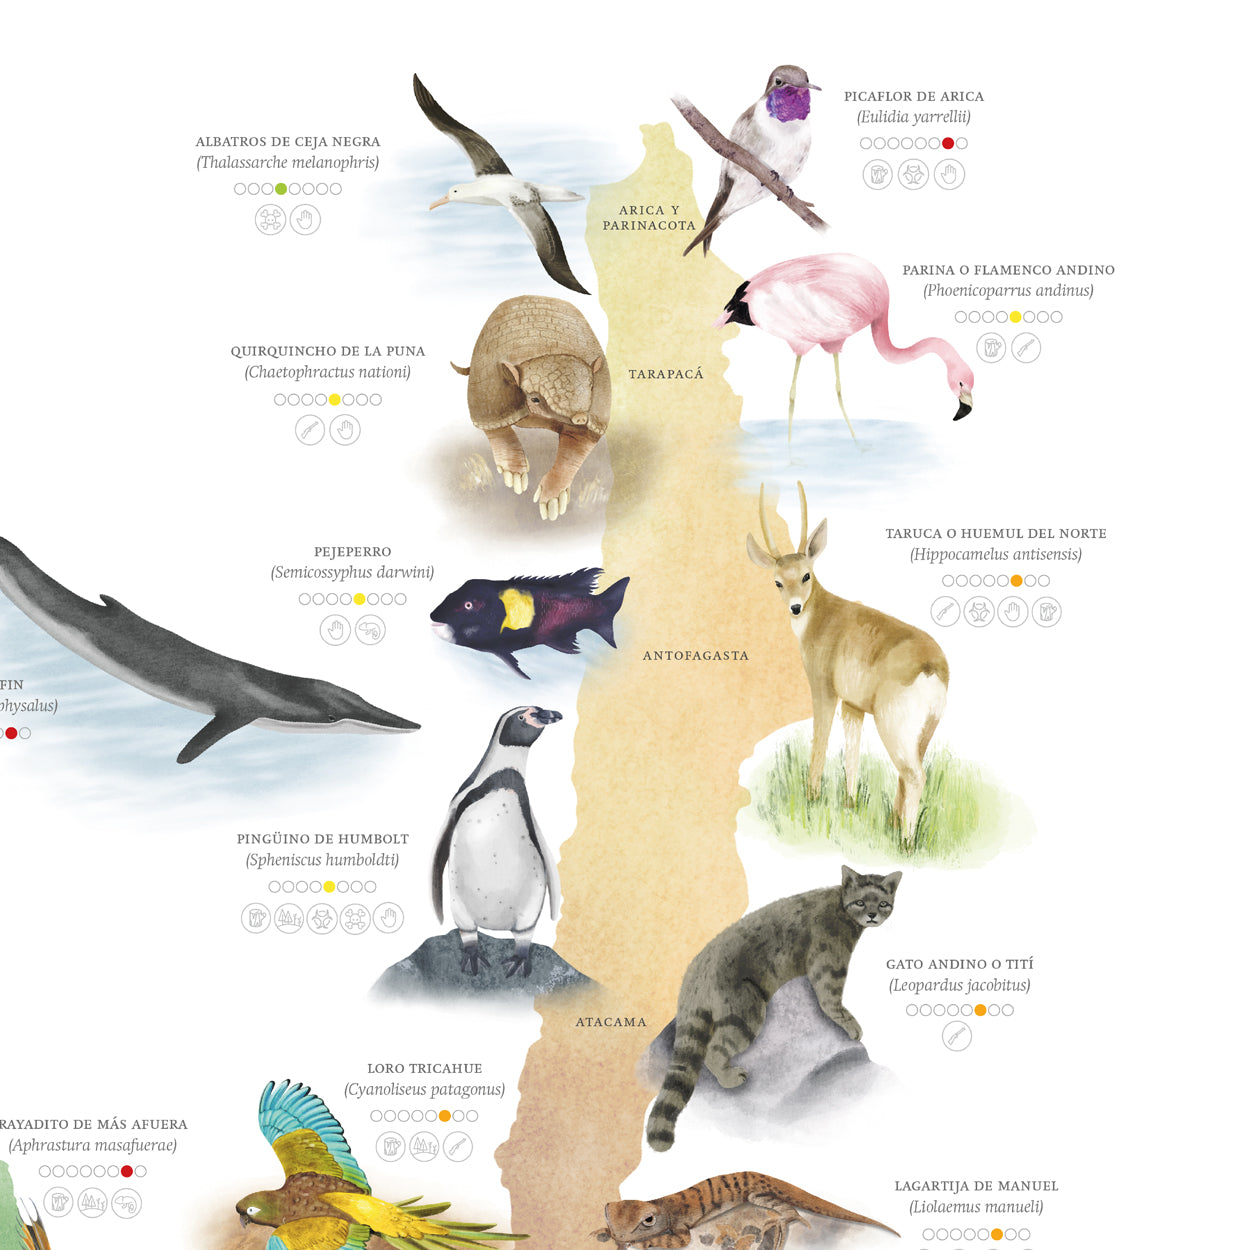 Mapa especies nativas de Chile con problemas de conservación